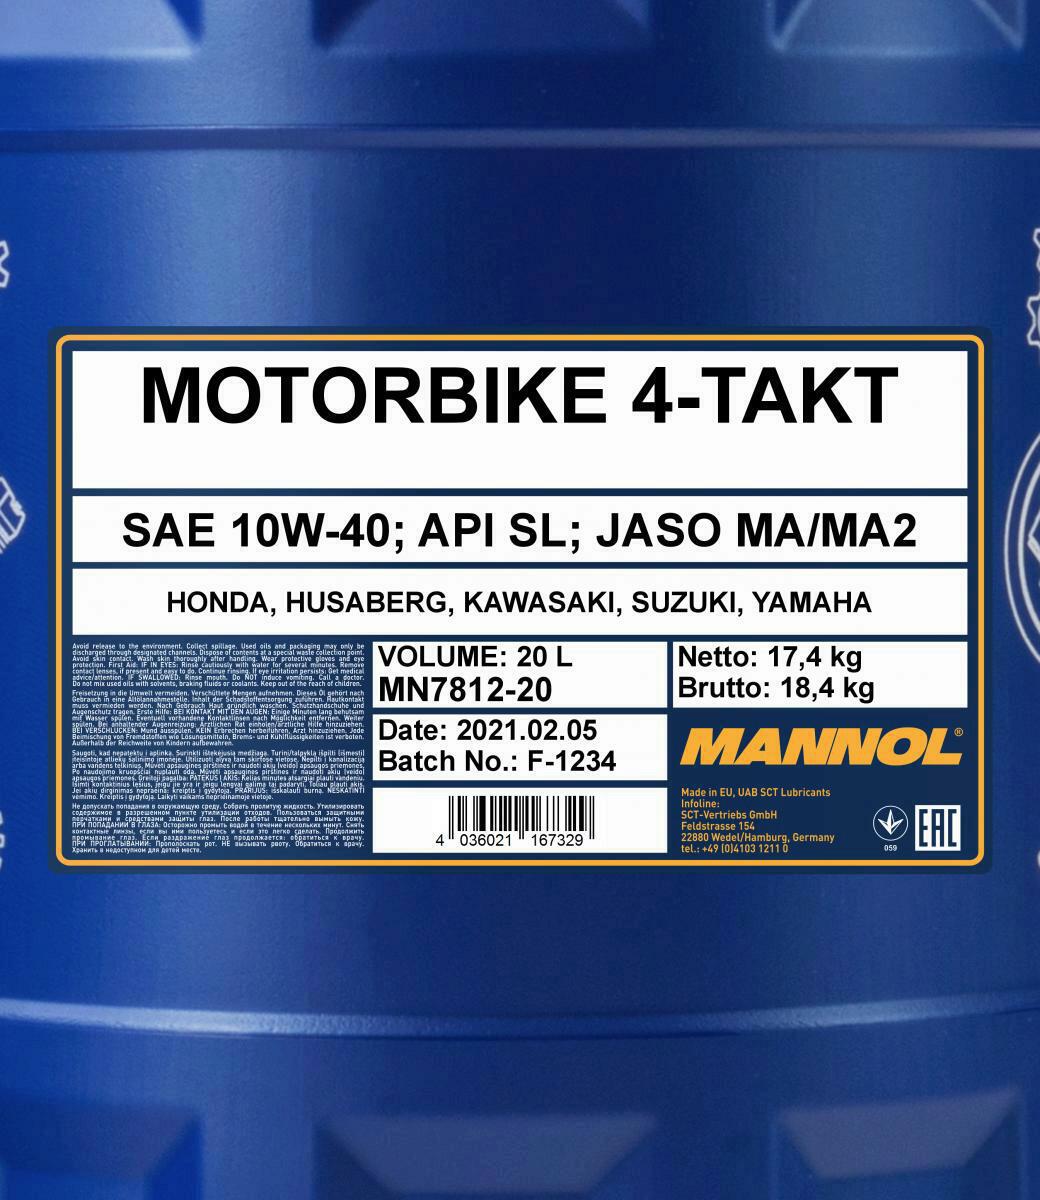 20L Mannol 4-Takt Motoröl Motorbike Motorrad Öl 10W-40